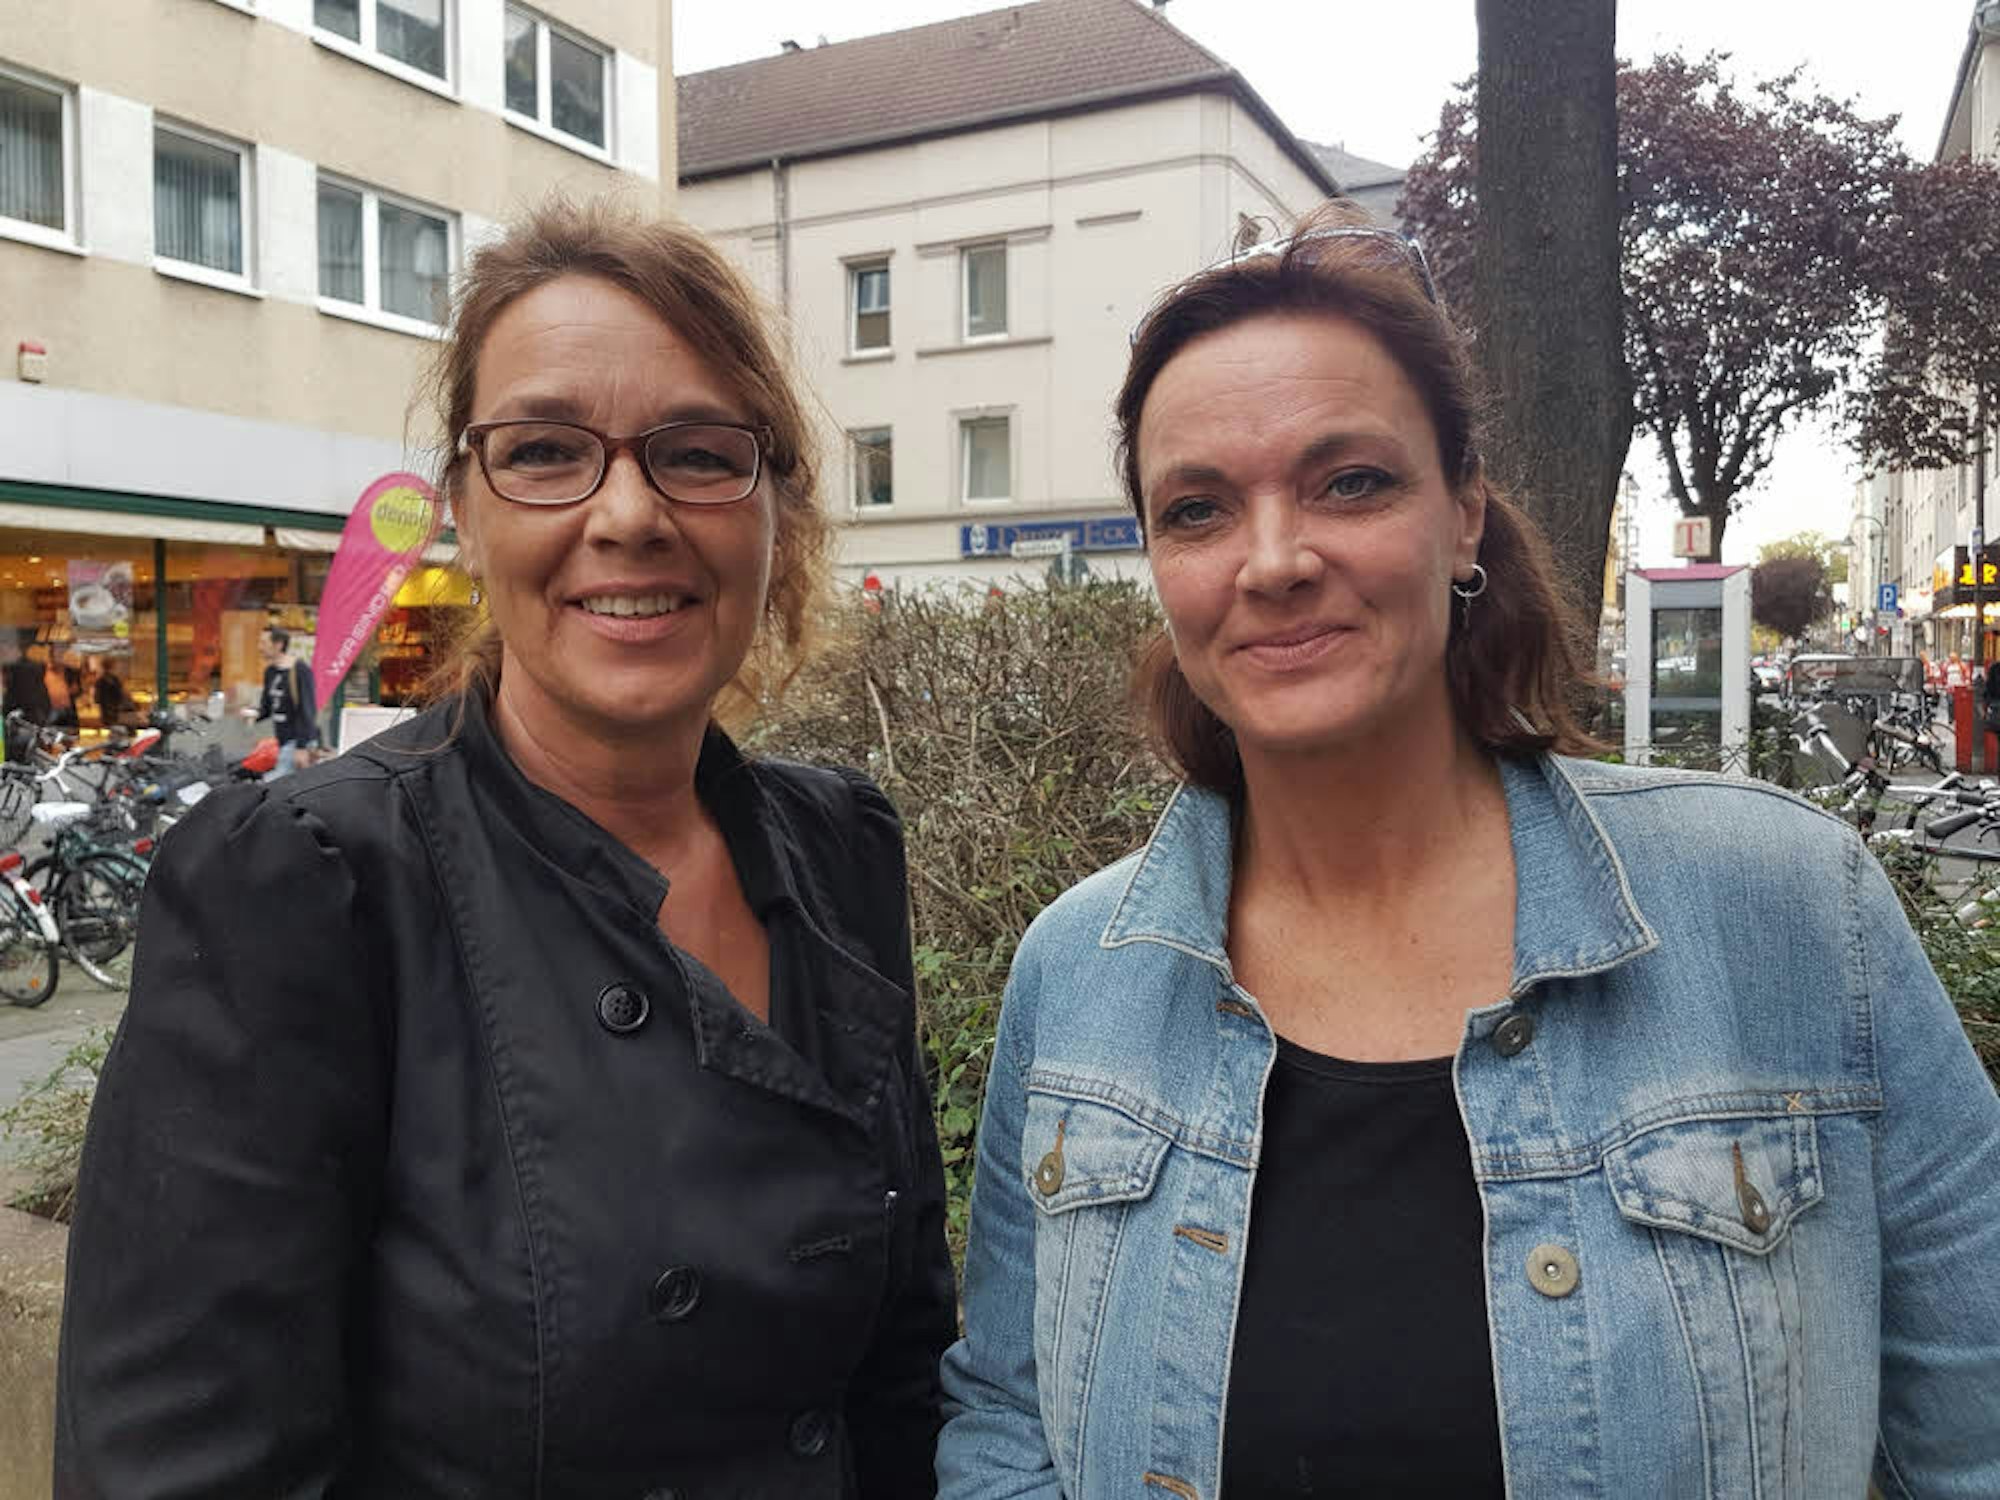 Petra Heinen (l.) und Janine Faßbender geben Bettlern häufig Geld.